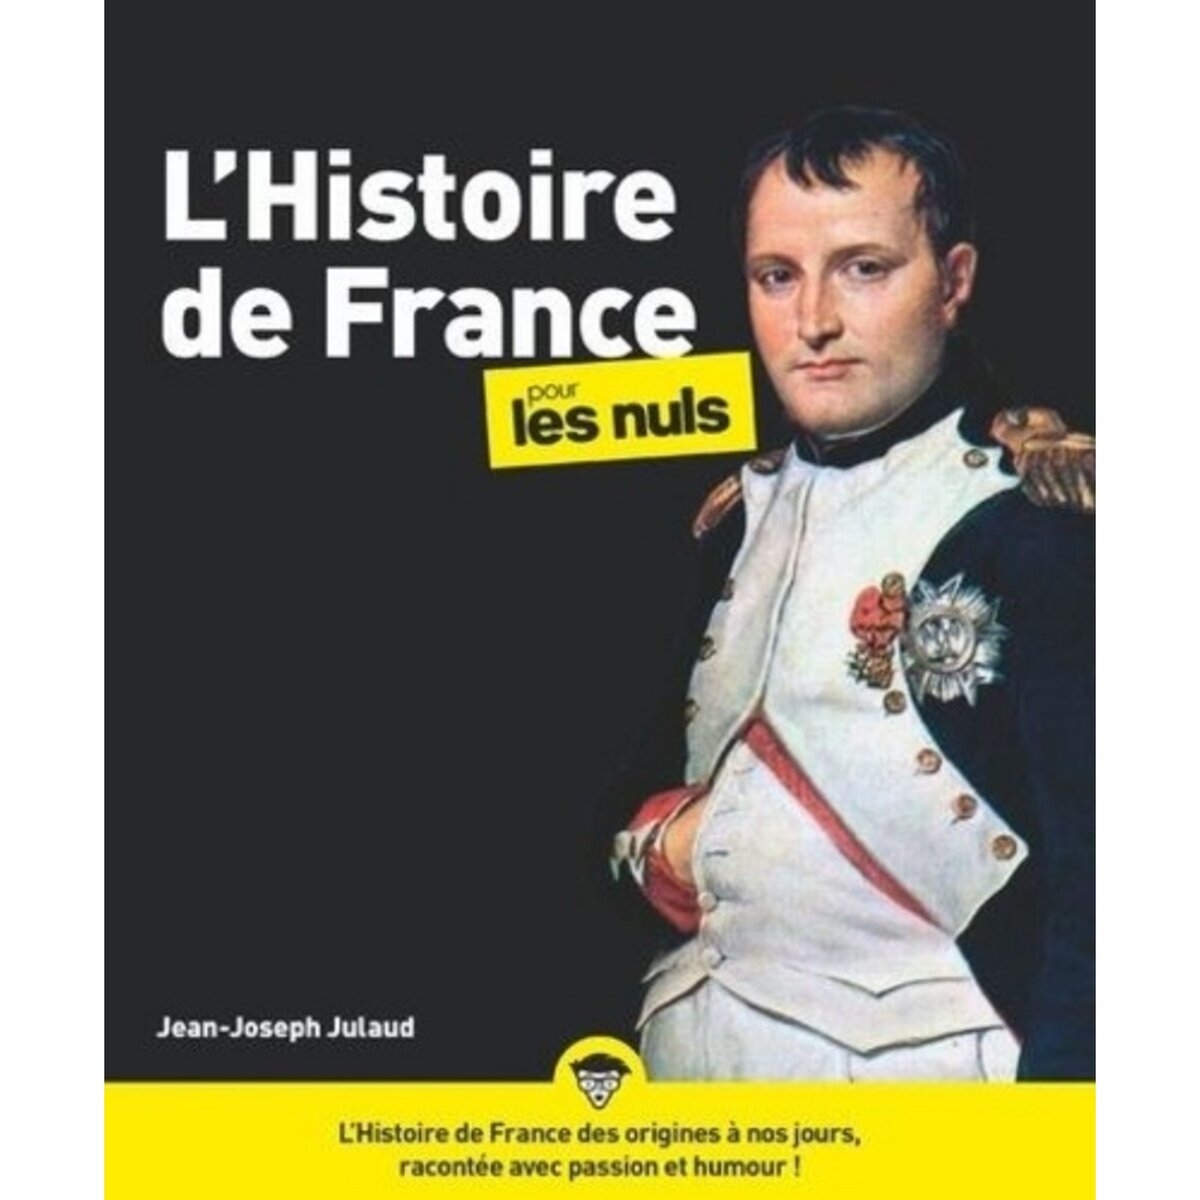  L'HISTOIRE DE FRANCE POUR LES NULS. 3E EDITION, Julaud Jean-Joseph